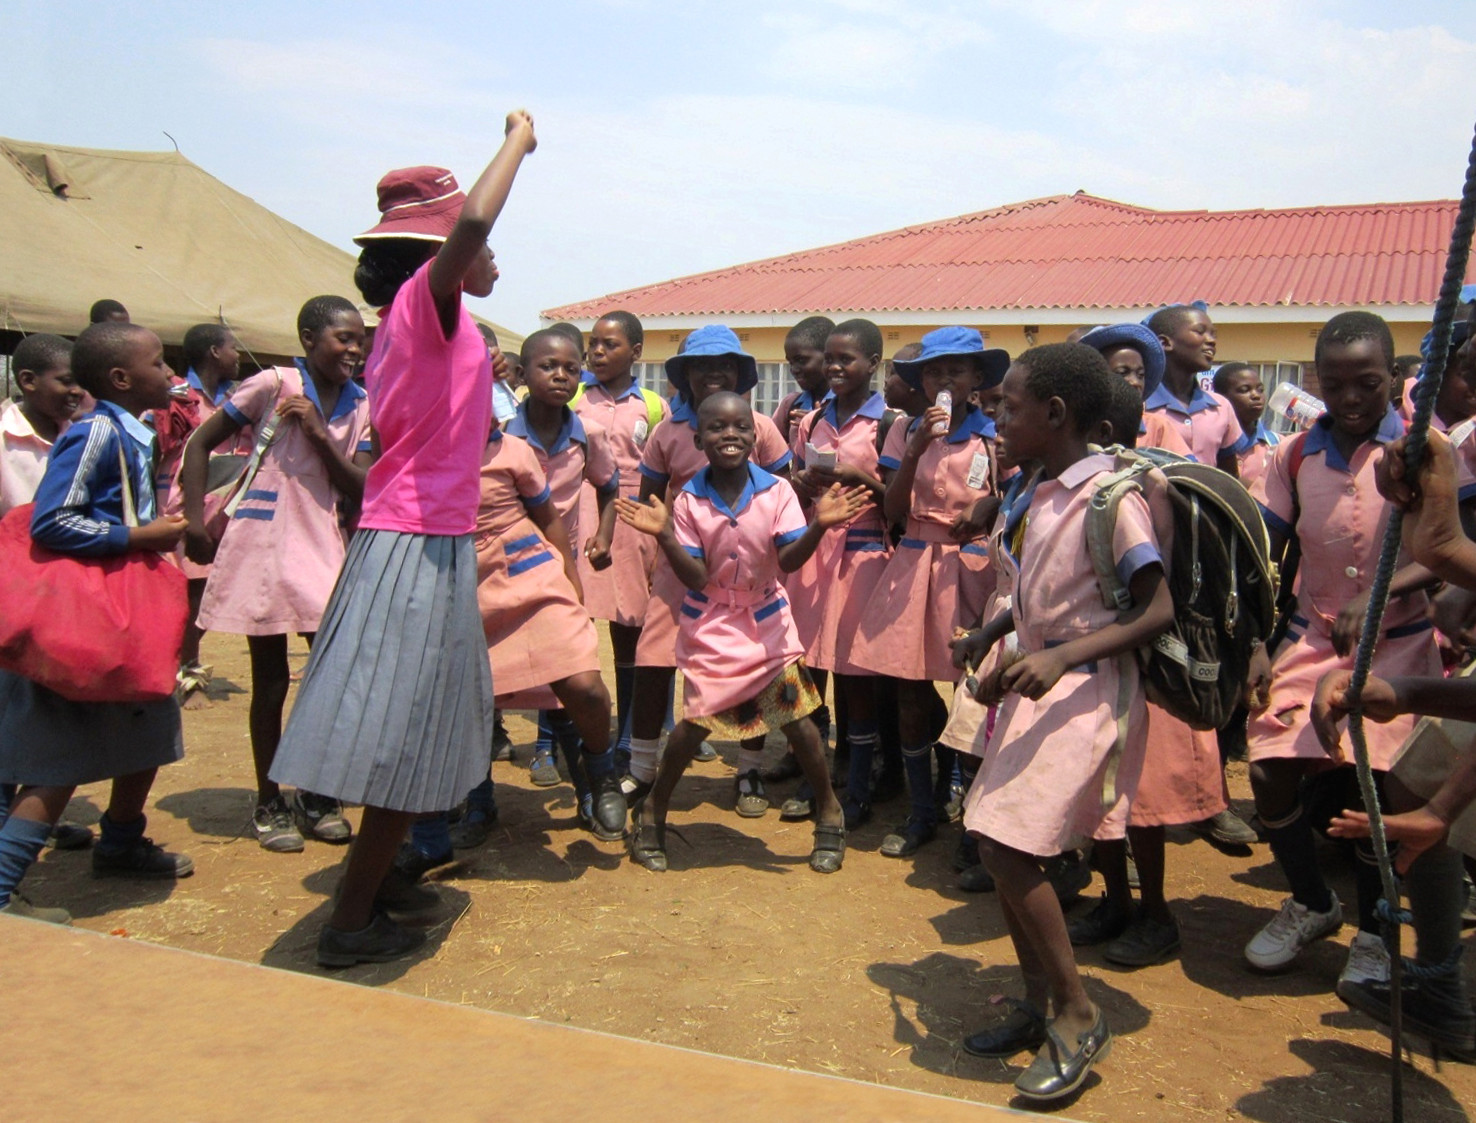 Girls from a school in Zimbabwe celebrate